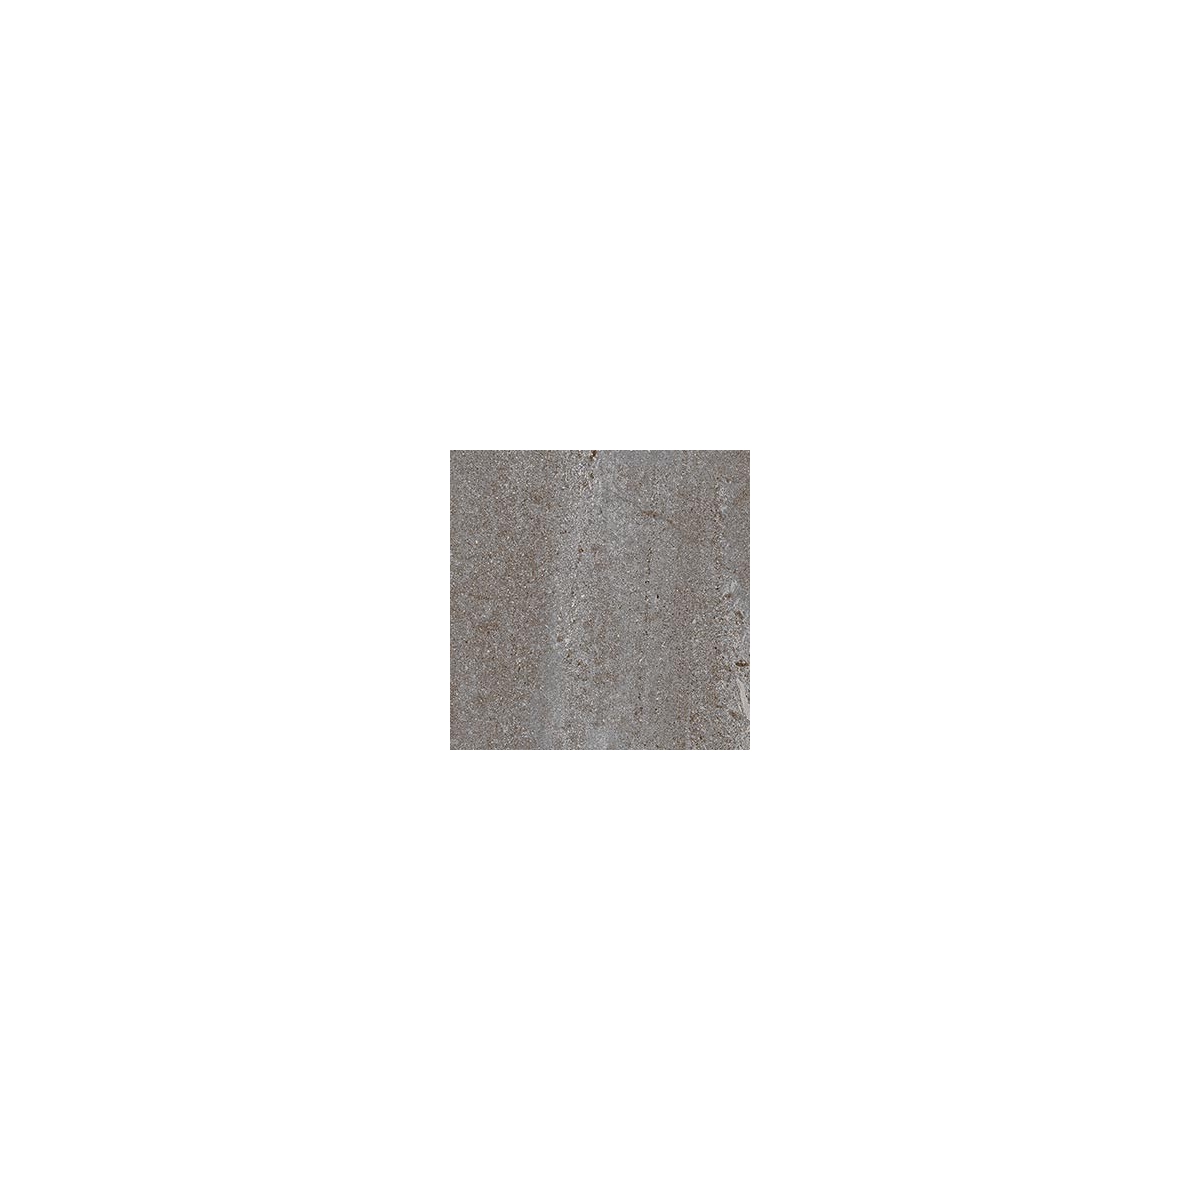 Corneille Cemento 15x15 (m2) - Pavimento hidráulico em grés porcelânico